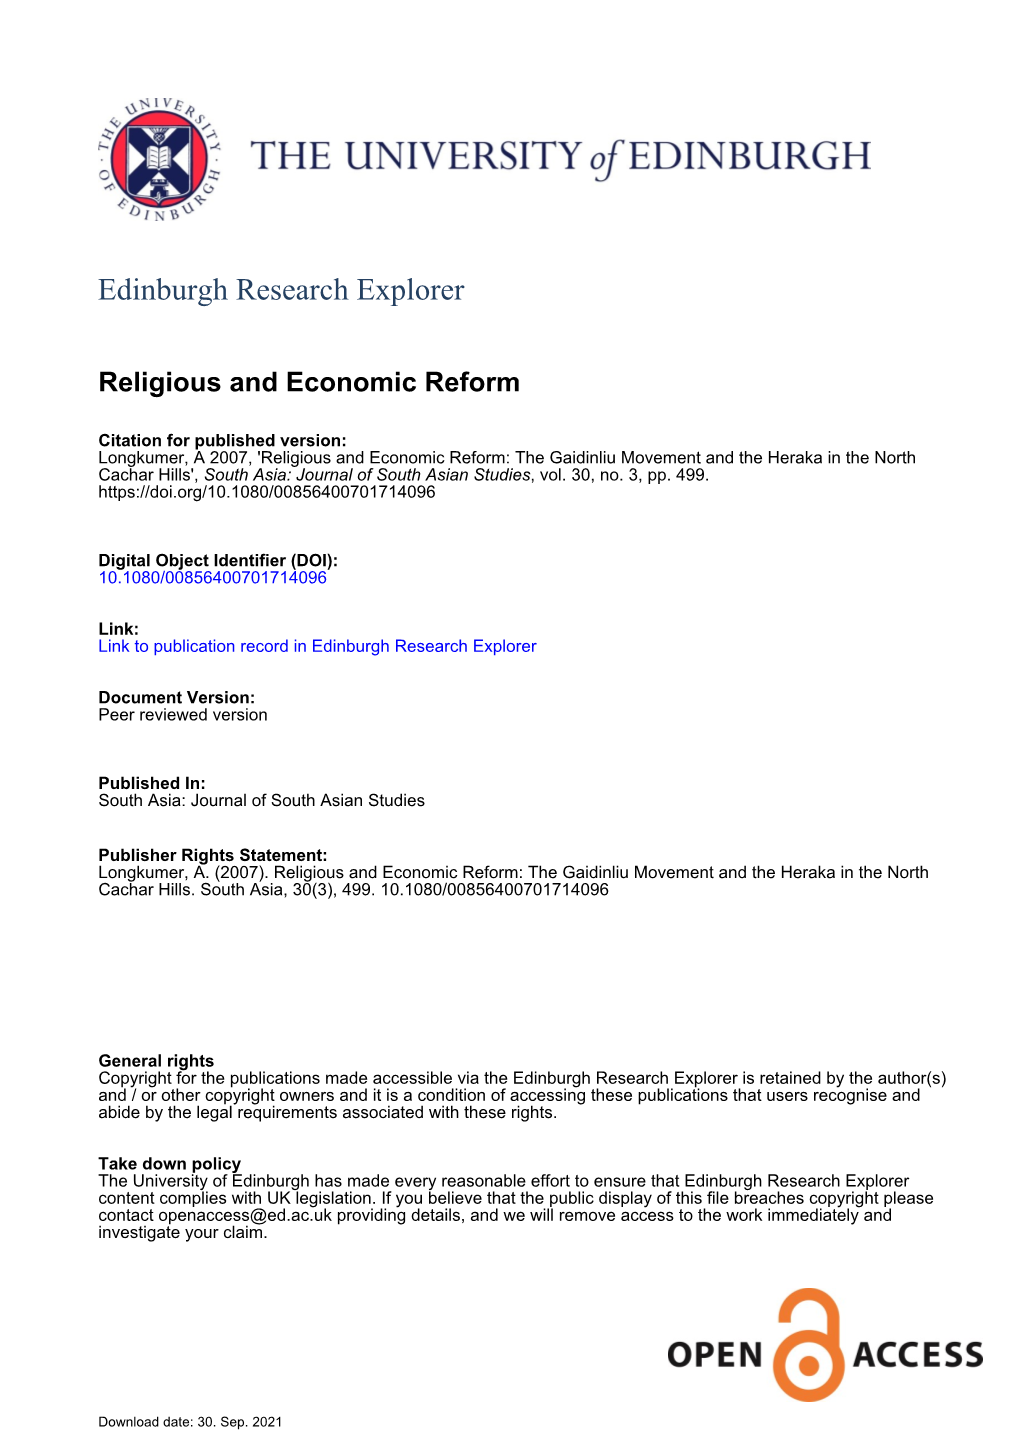 Religious and Economic Reform